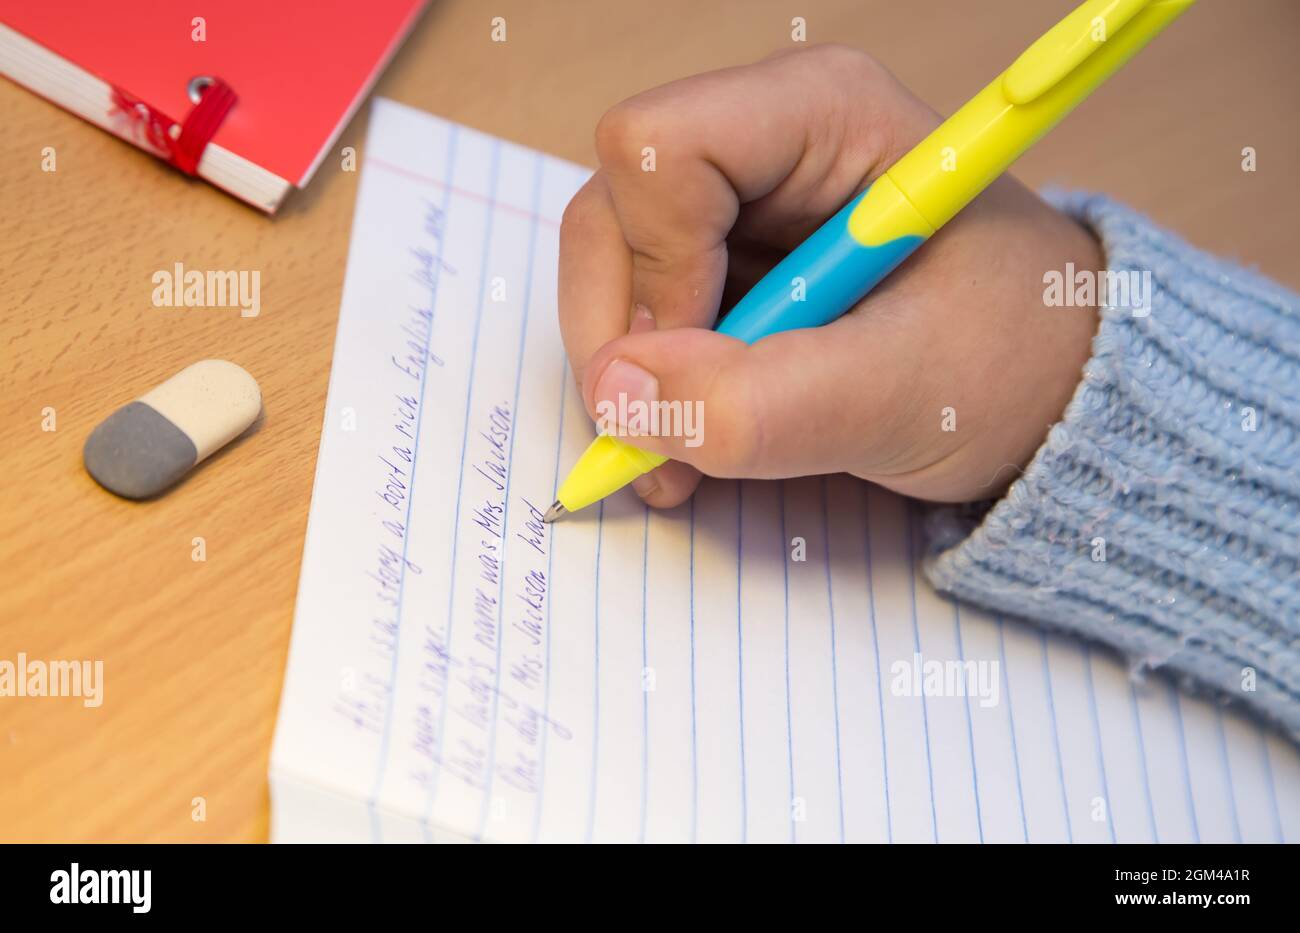 Le mani degli allievi in primo piano stanno scrivendo in inglese con una  penna a sfera. Uno scolaro svolge un compito sul posto di lavoro. Il  concetto di educazione dei bambini, di